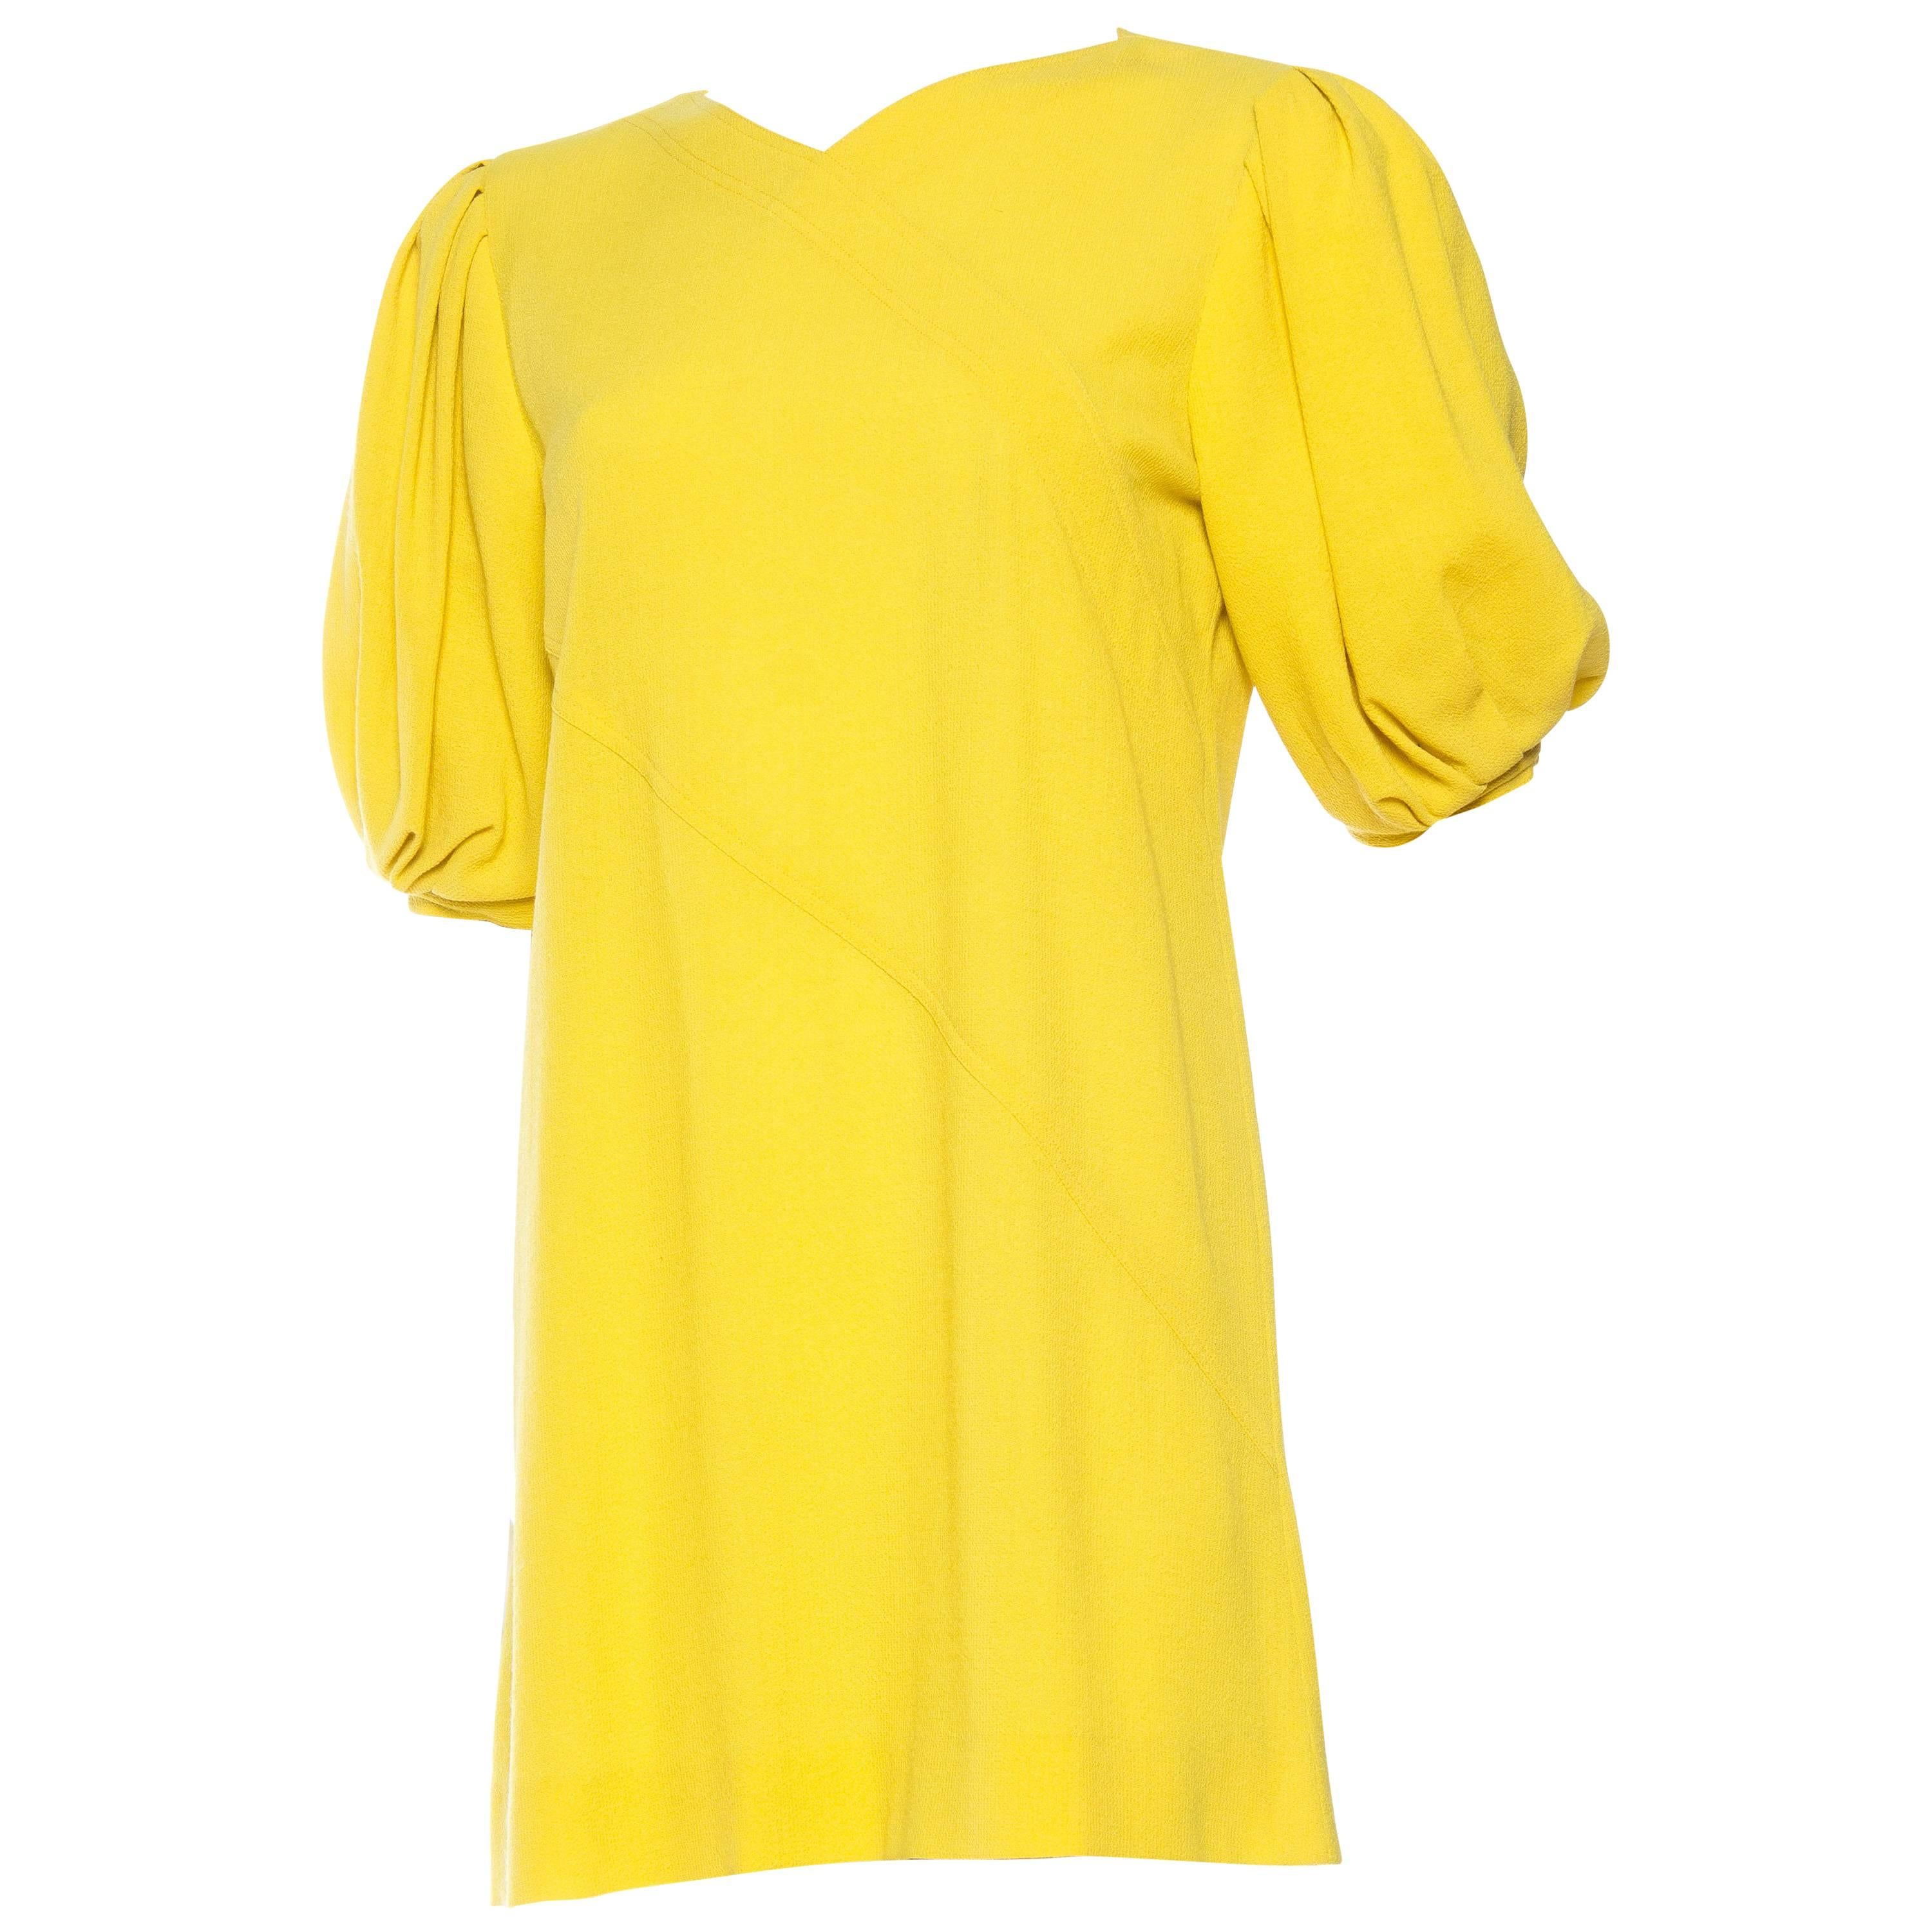 Jean Muir Lightweight Mod Yellow Dress